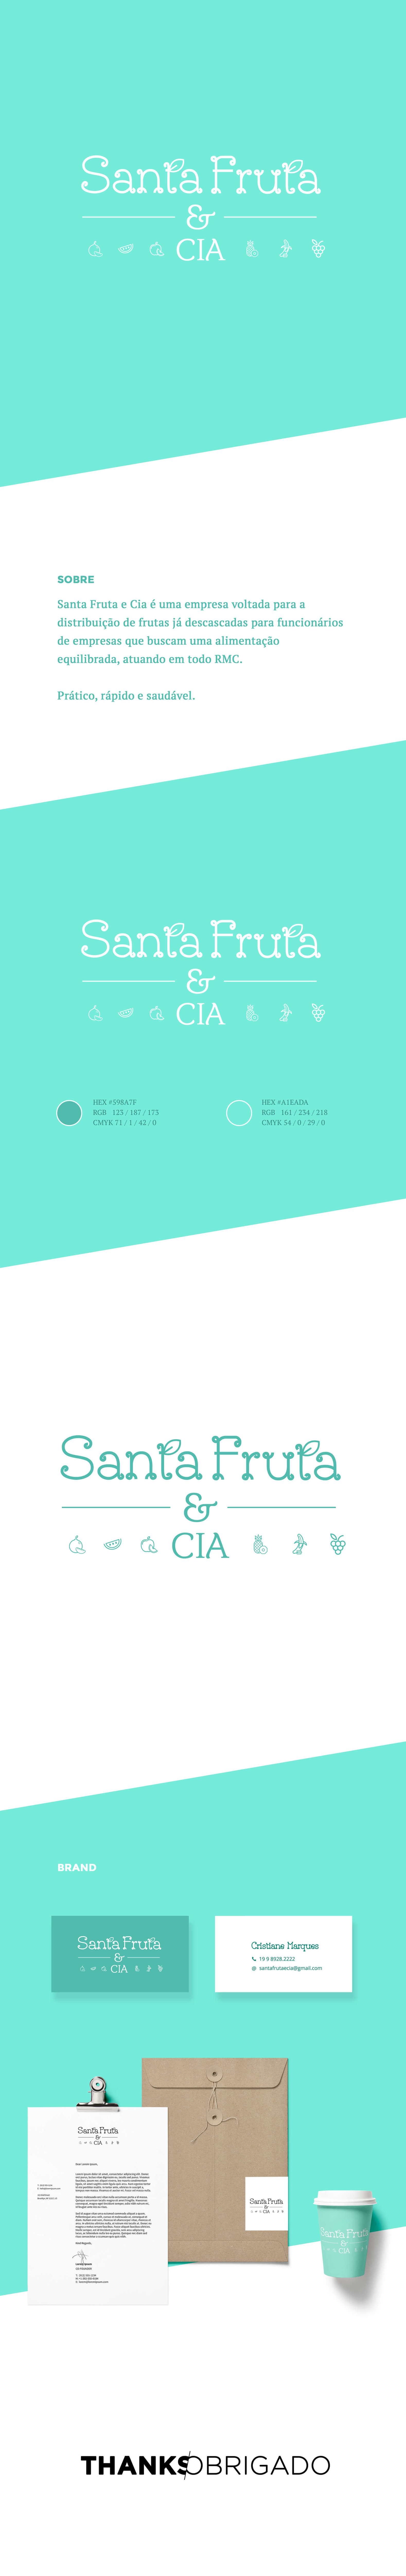 Projeto - Mutt Studio -Santa Fruta & CIA